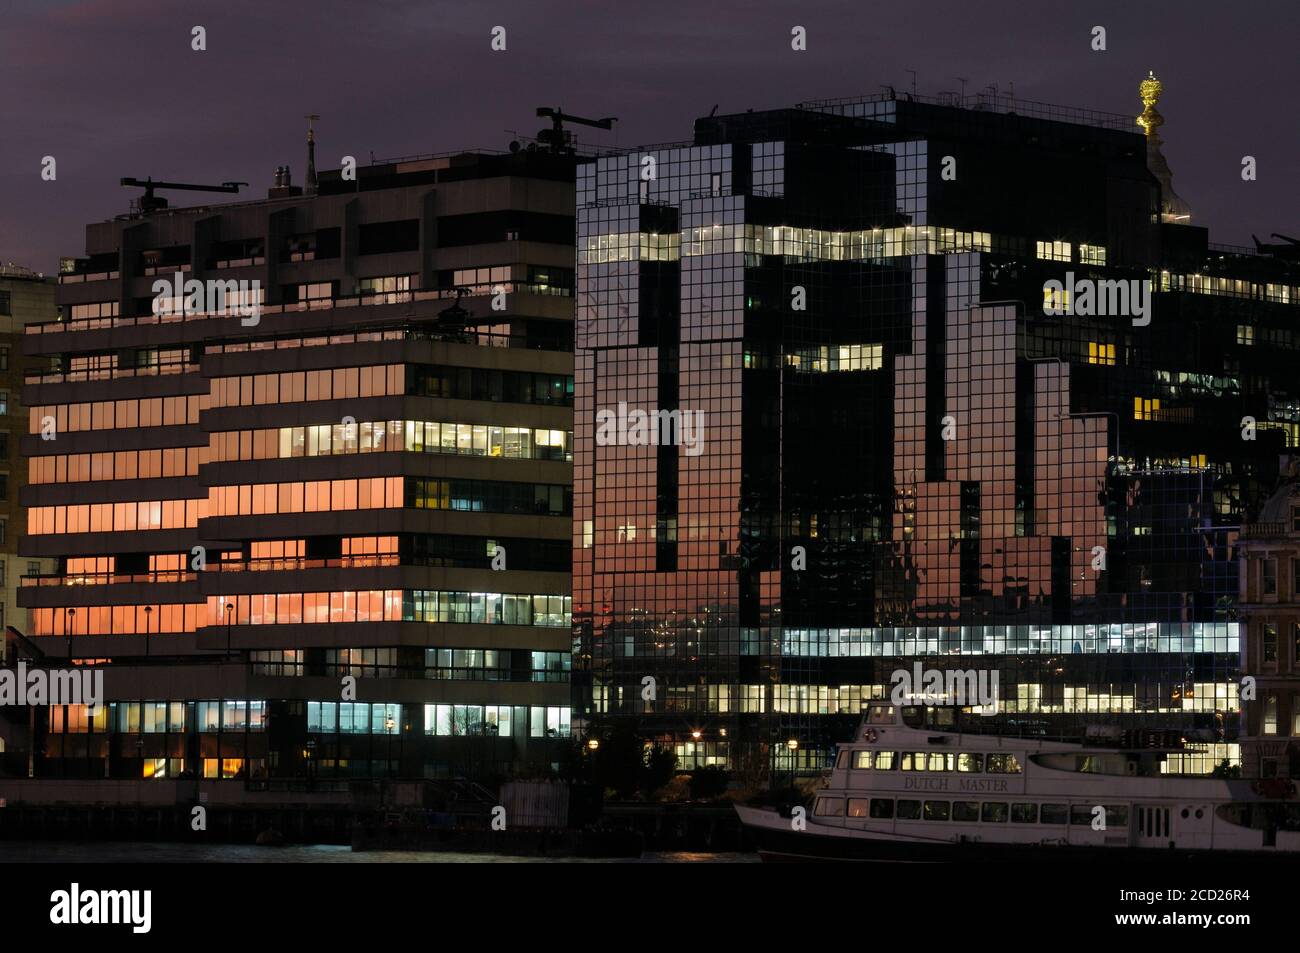 Vue nocturne des bâtiments le long de Lower Thames Street sur le côté nord de la rivière - St Magnus House (à gauche) et Northern & Shell Building (à droite), Londres, Royaume-Uni Banque D'Images